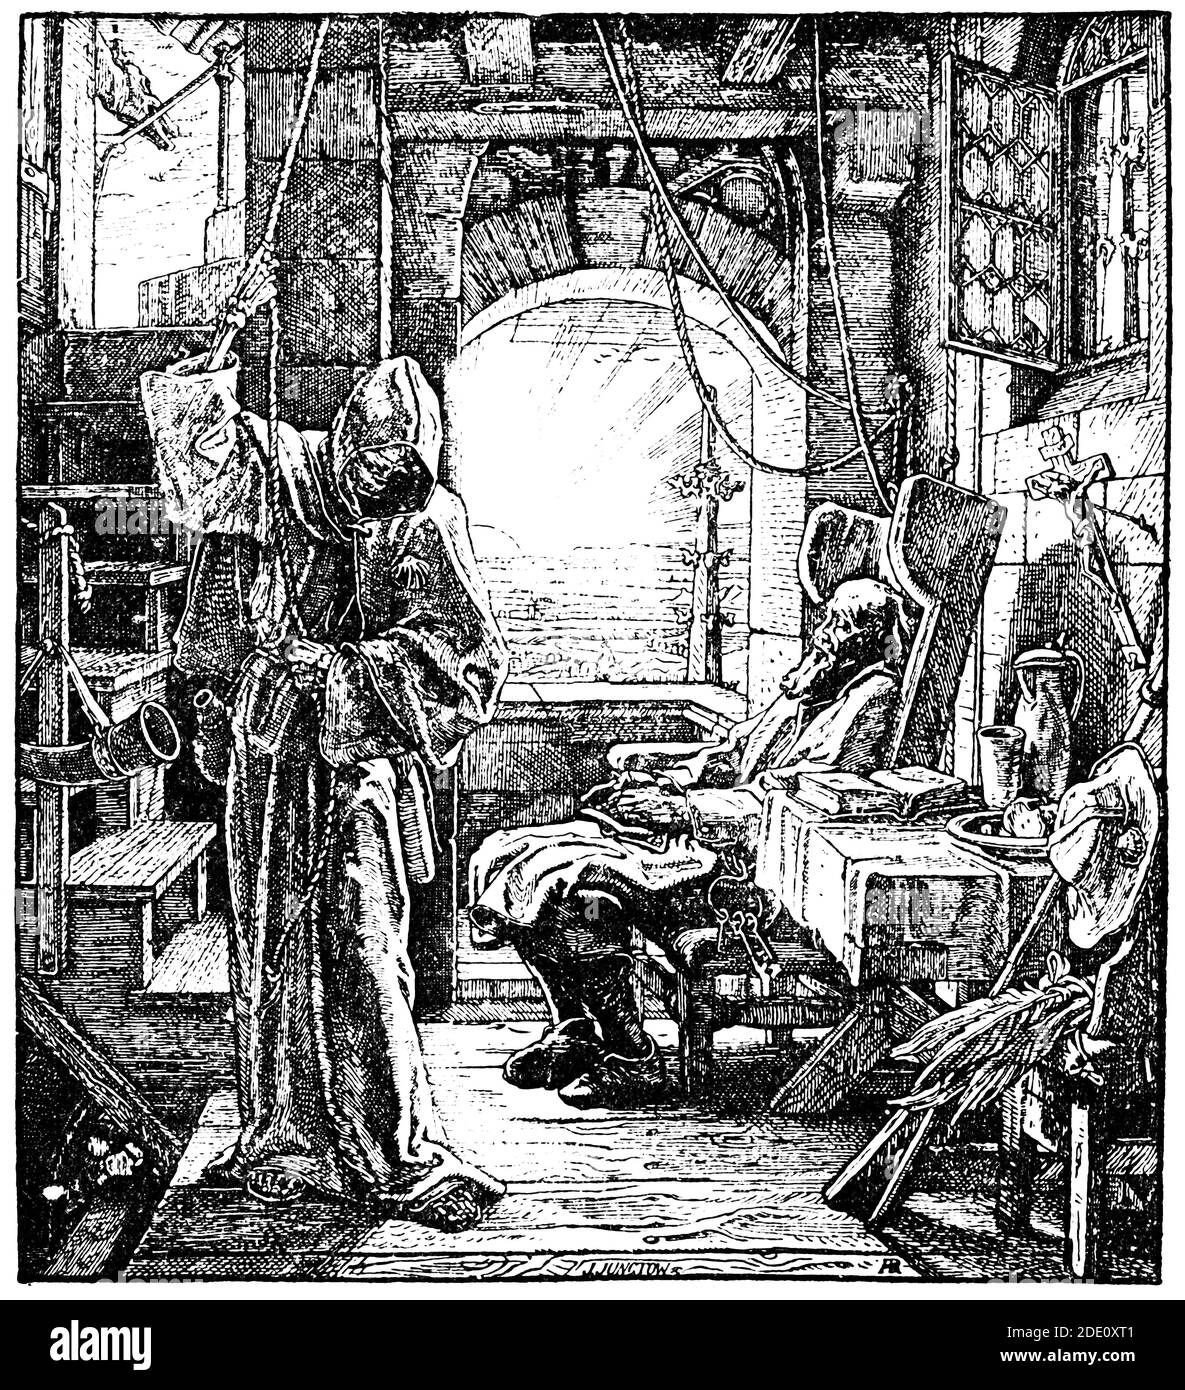 La mort en tant qu'ami est une peinture de l'artiste allemand Alfred Rethel. Illustration du 19e siècle. Arrière-plan blanc. Banque D'Images